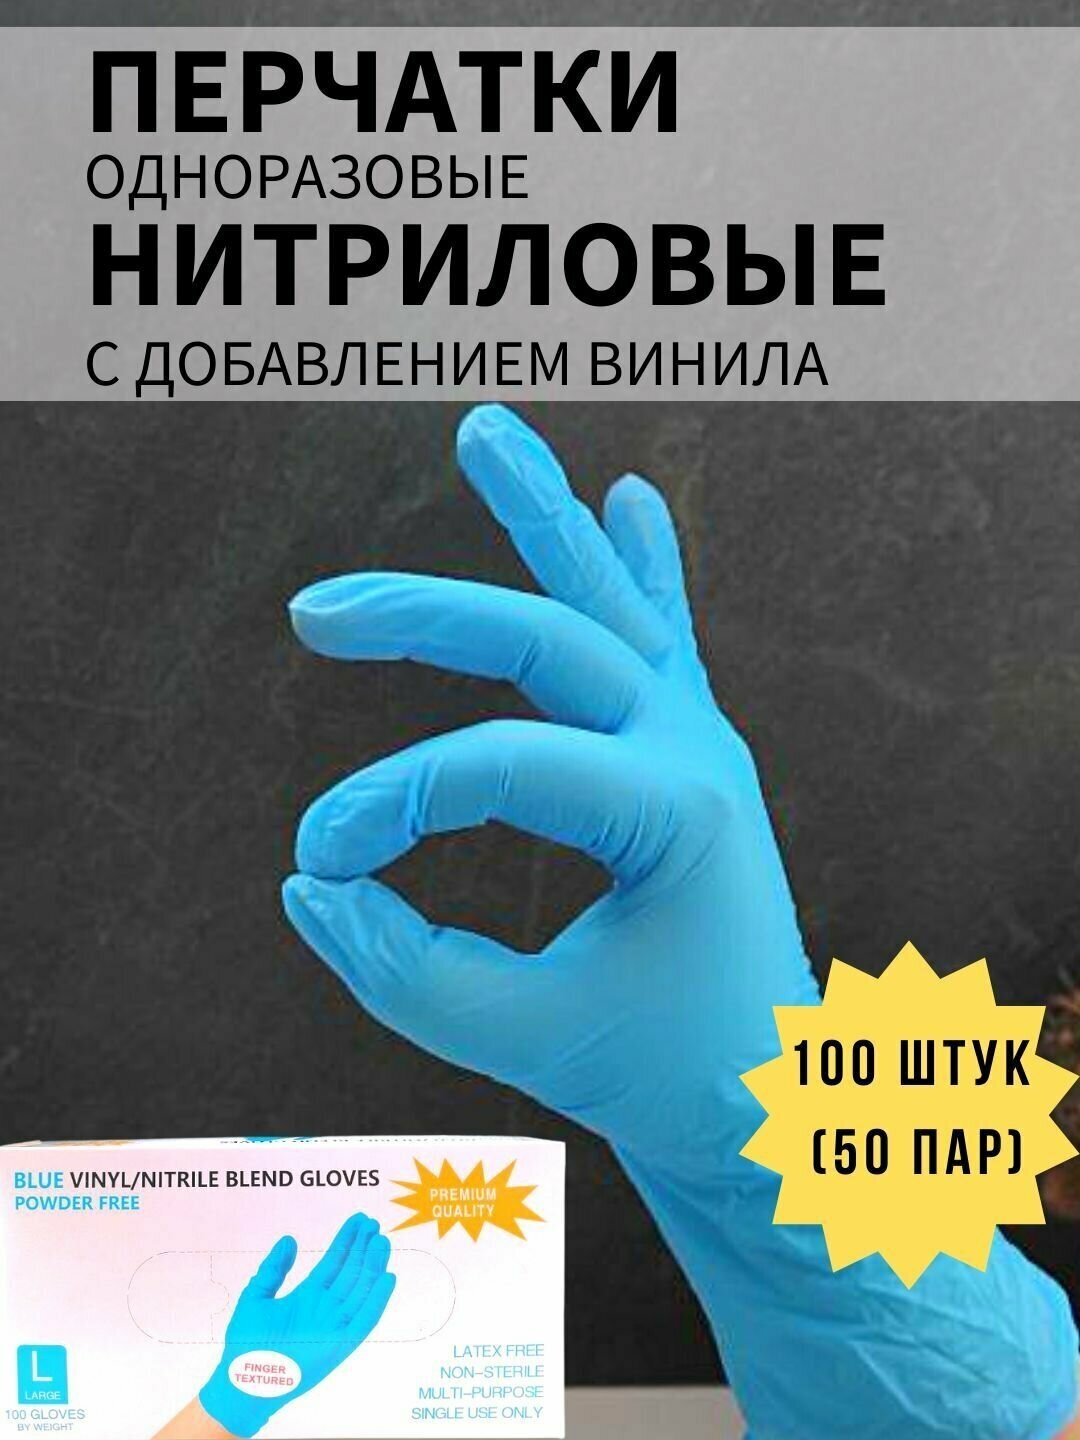 Перчатки одноразовые нитрил-винил голубые 100 шт, размер XS - фотография № 1